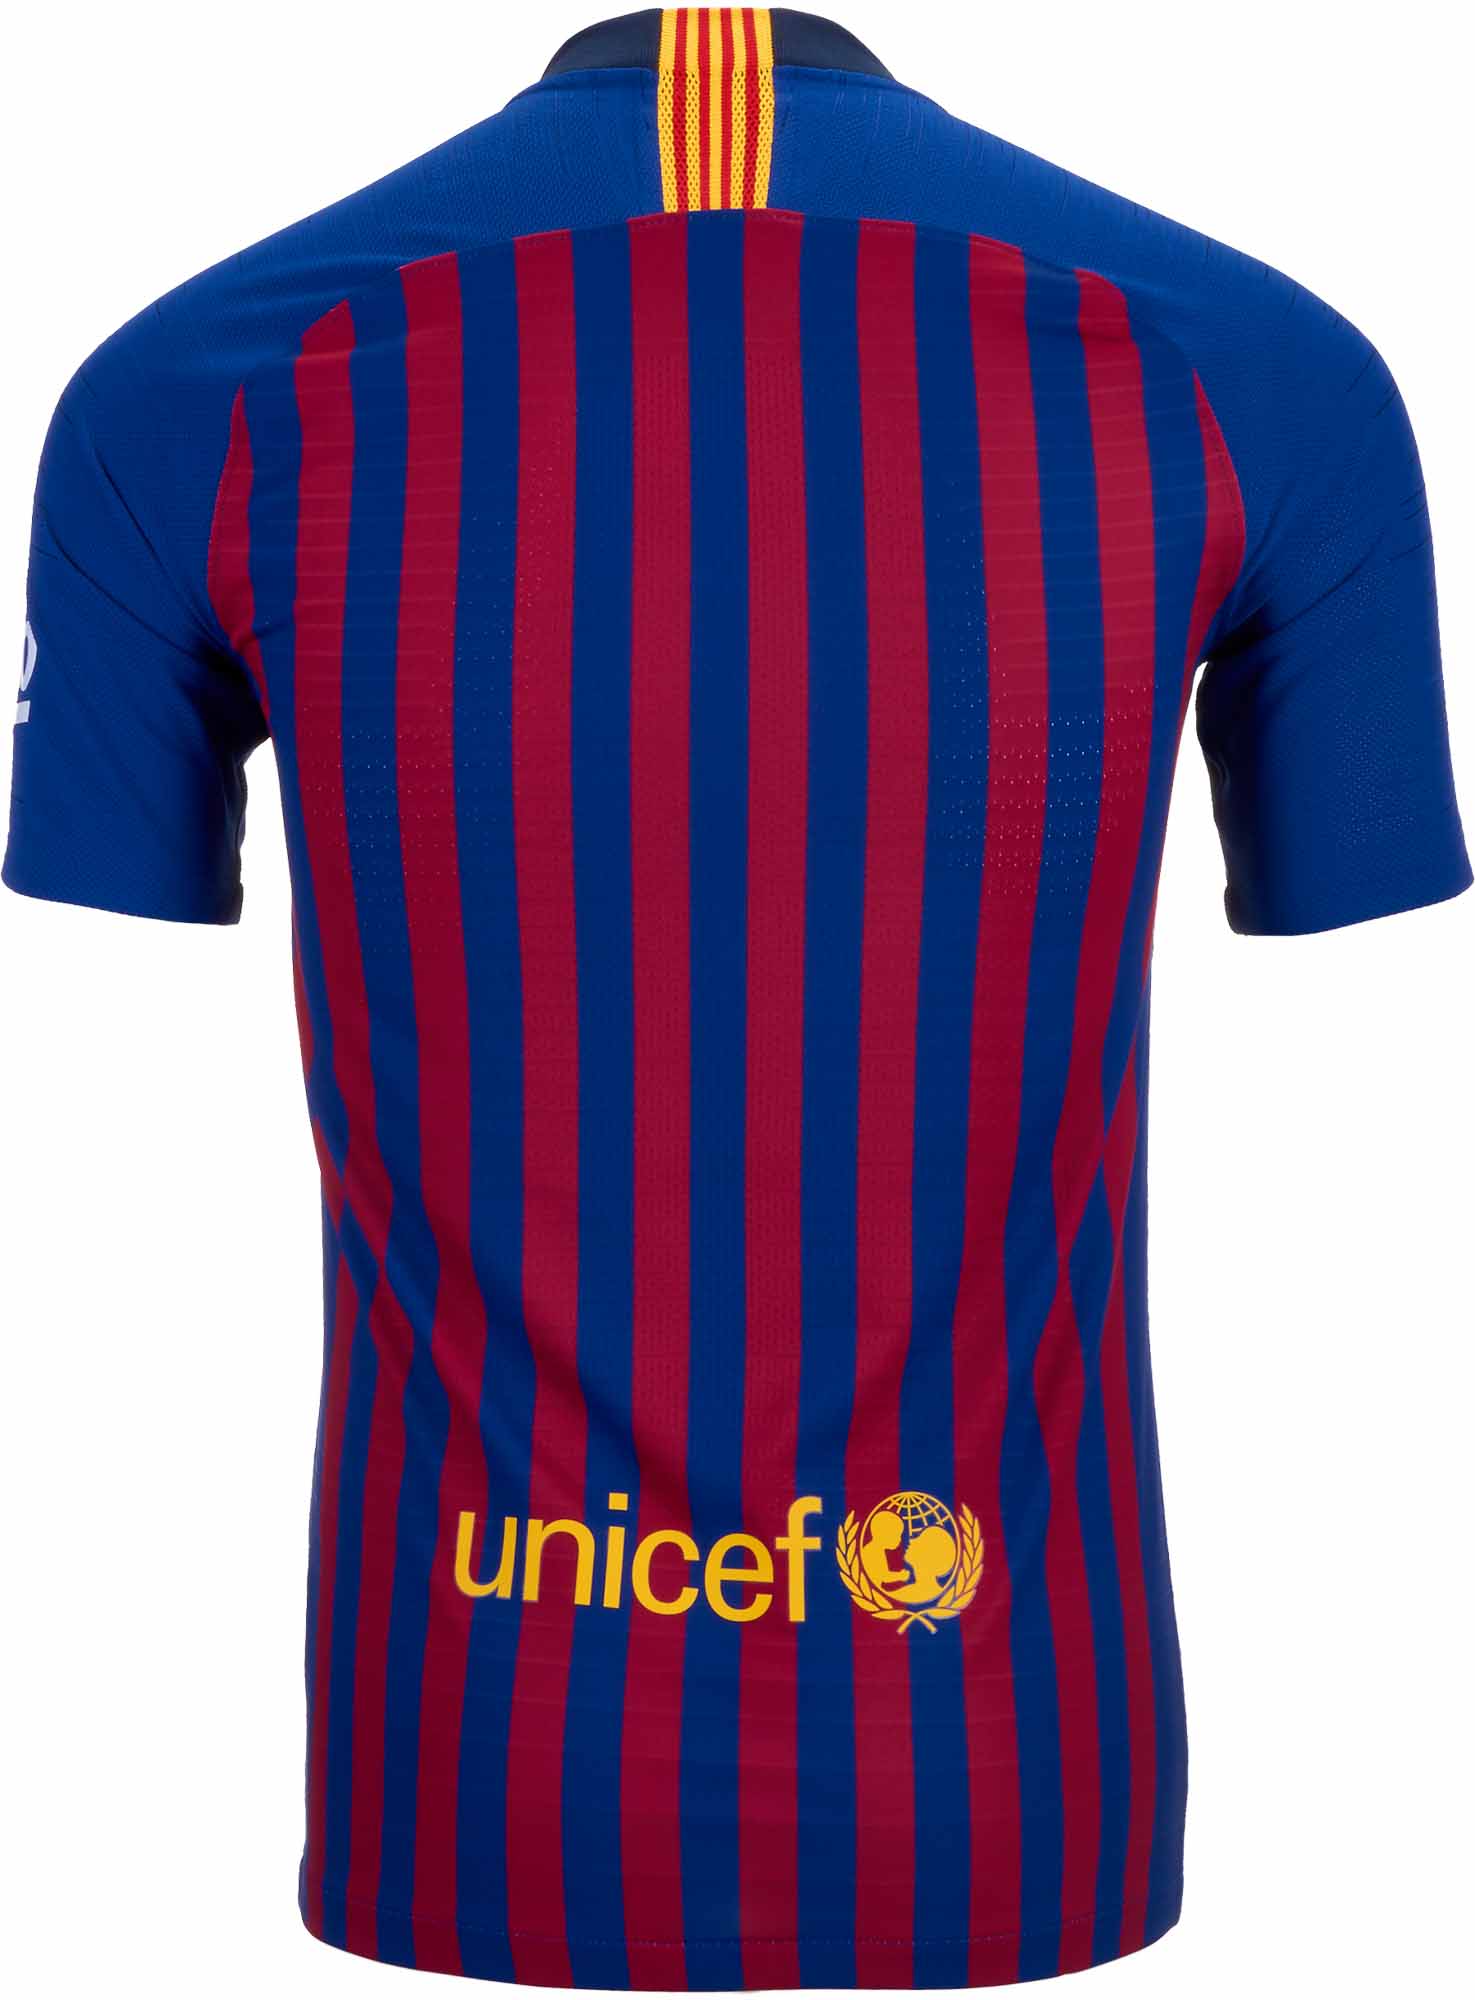 barcelona jersey back